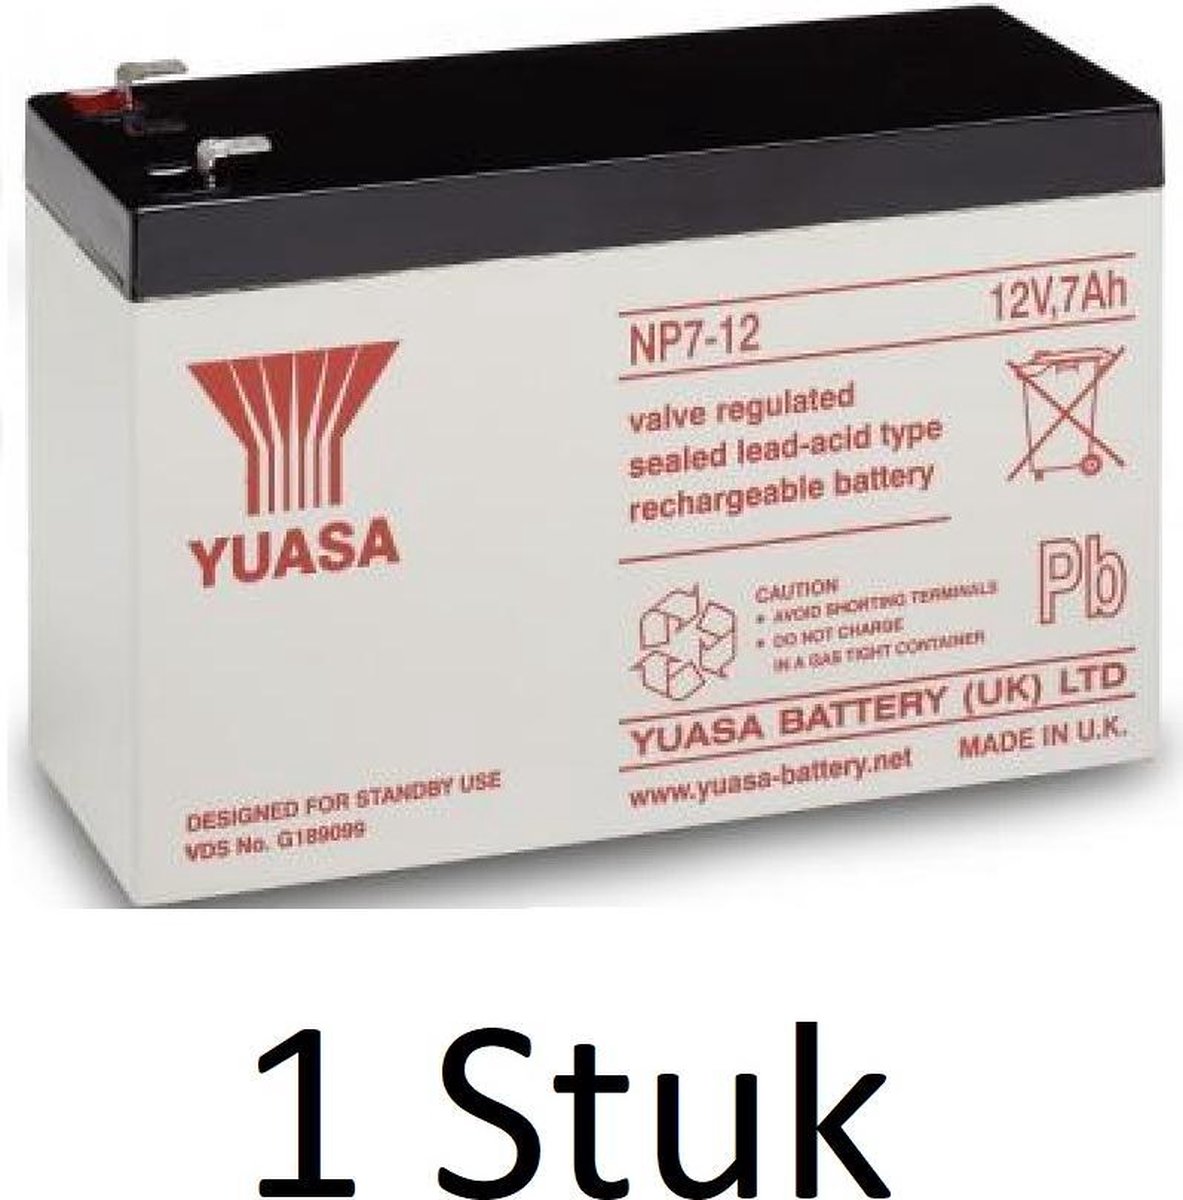 1 Stuk Yuasa lead-acid Batterij NP7-12 - Yuasa